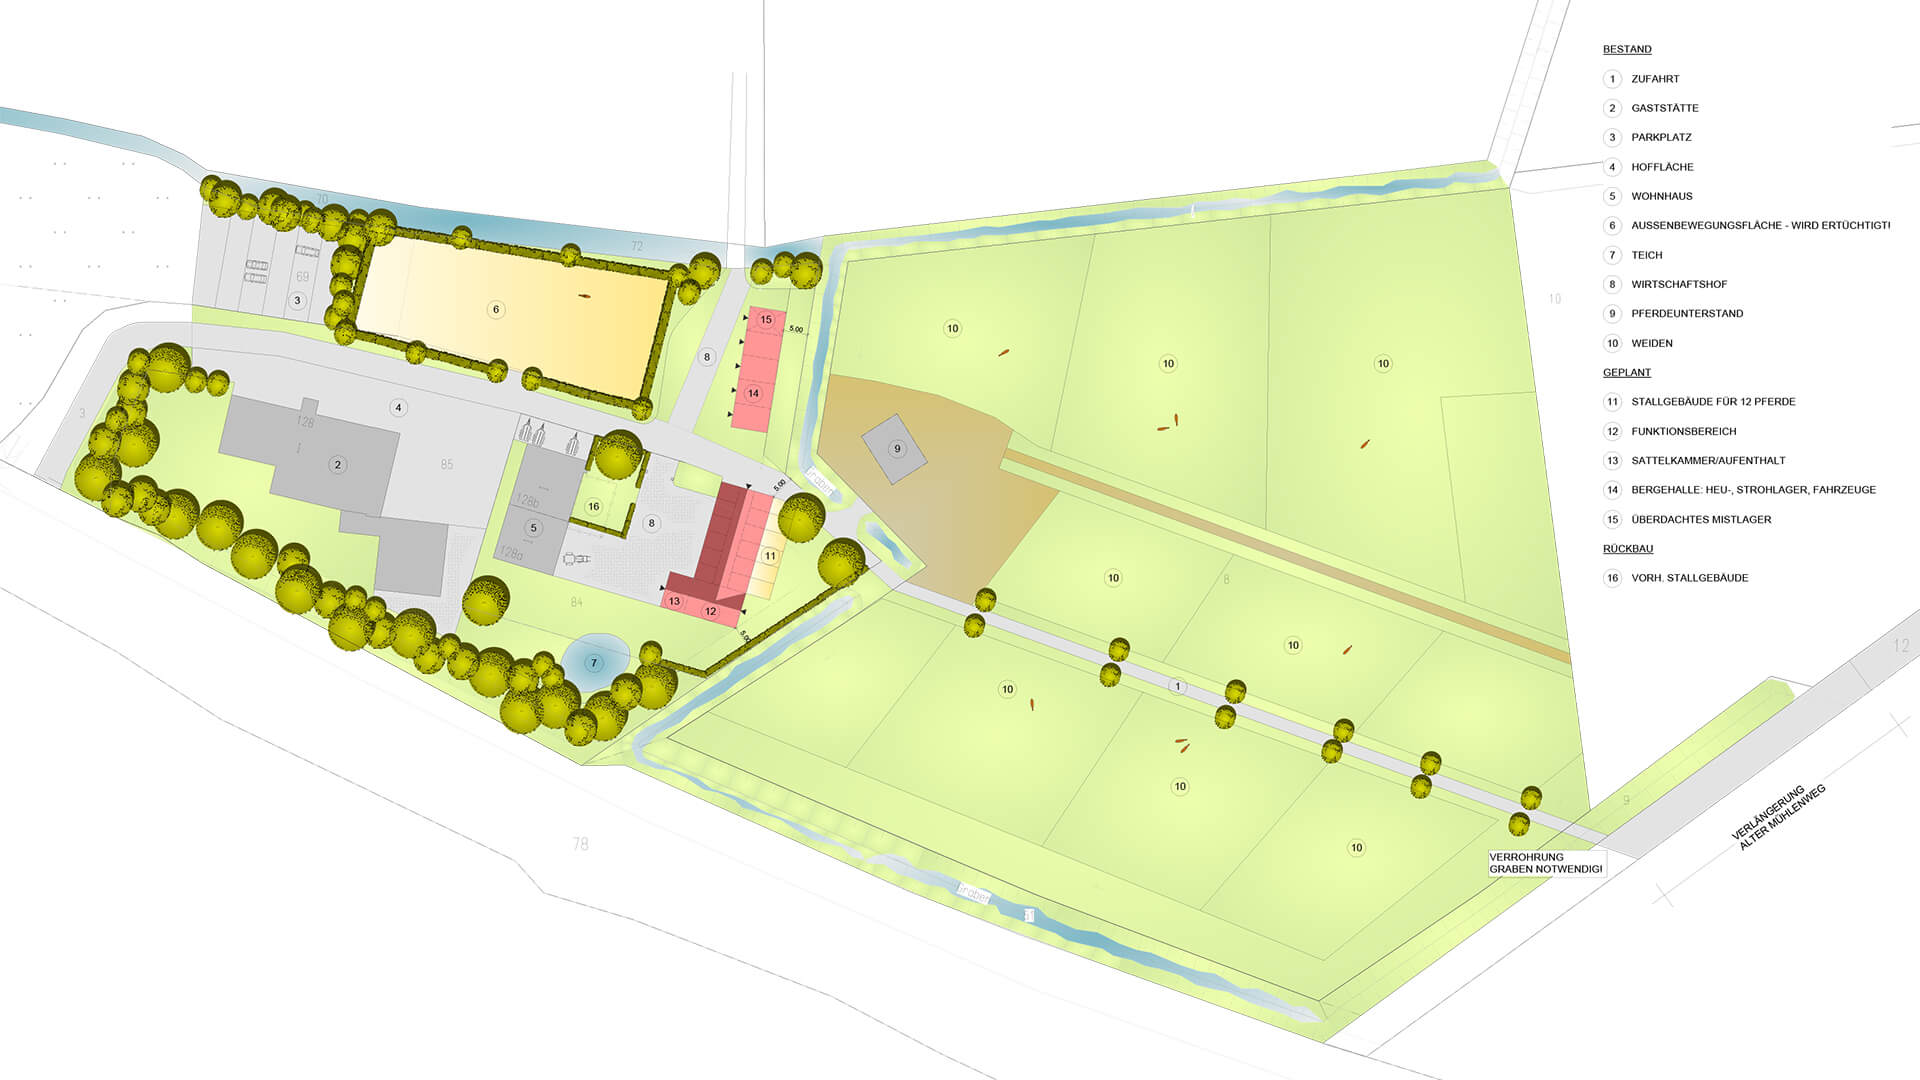 Detailplan einer Pensionspferdeanlage mit Stallungen und Weideflächen.